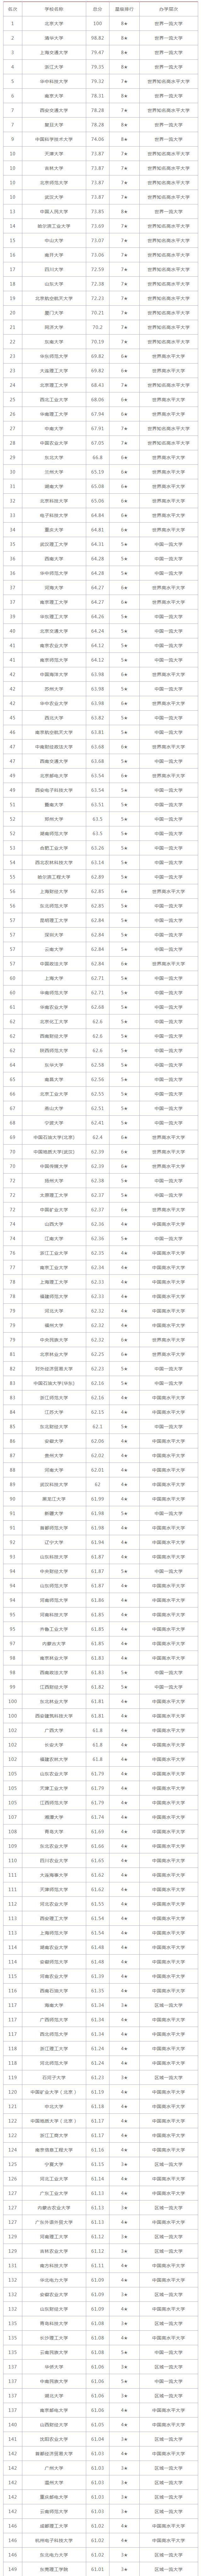 大学排名2021最新排名_全国大学_中国一览表(图2)